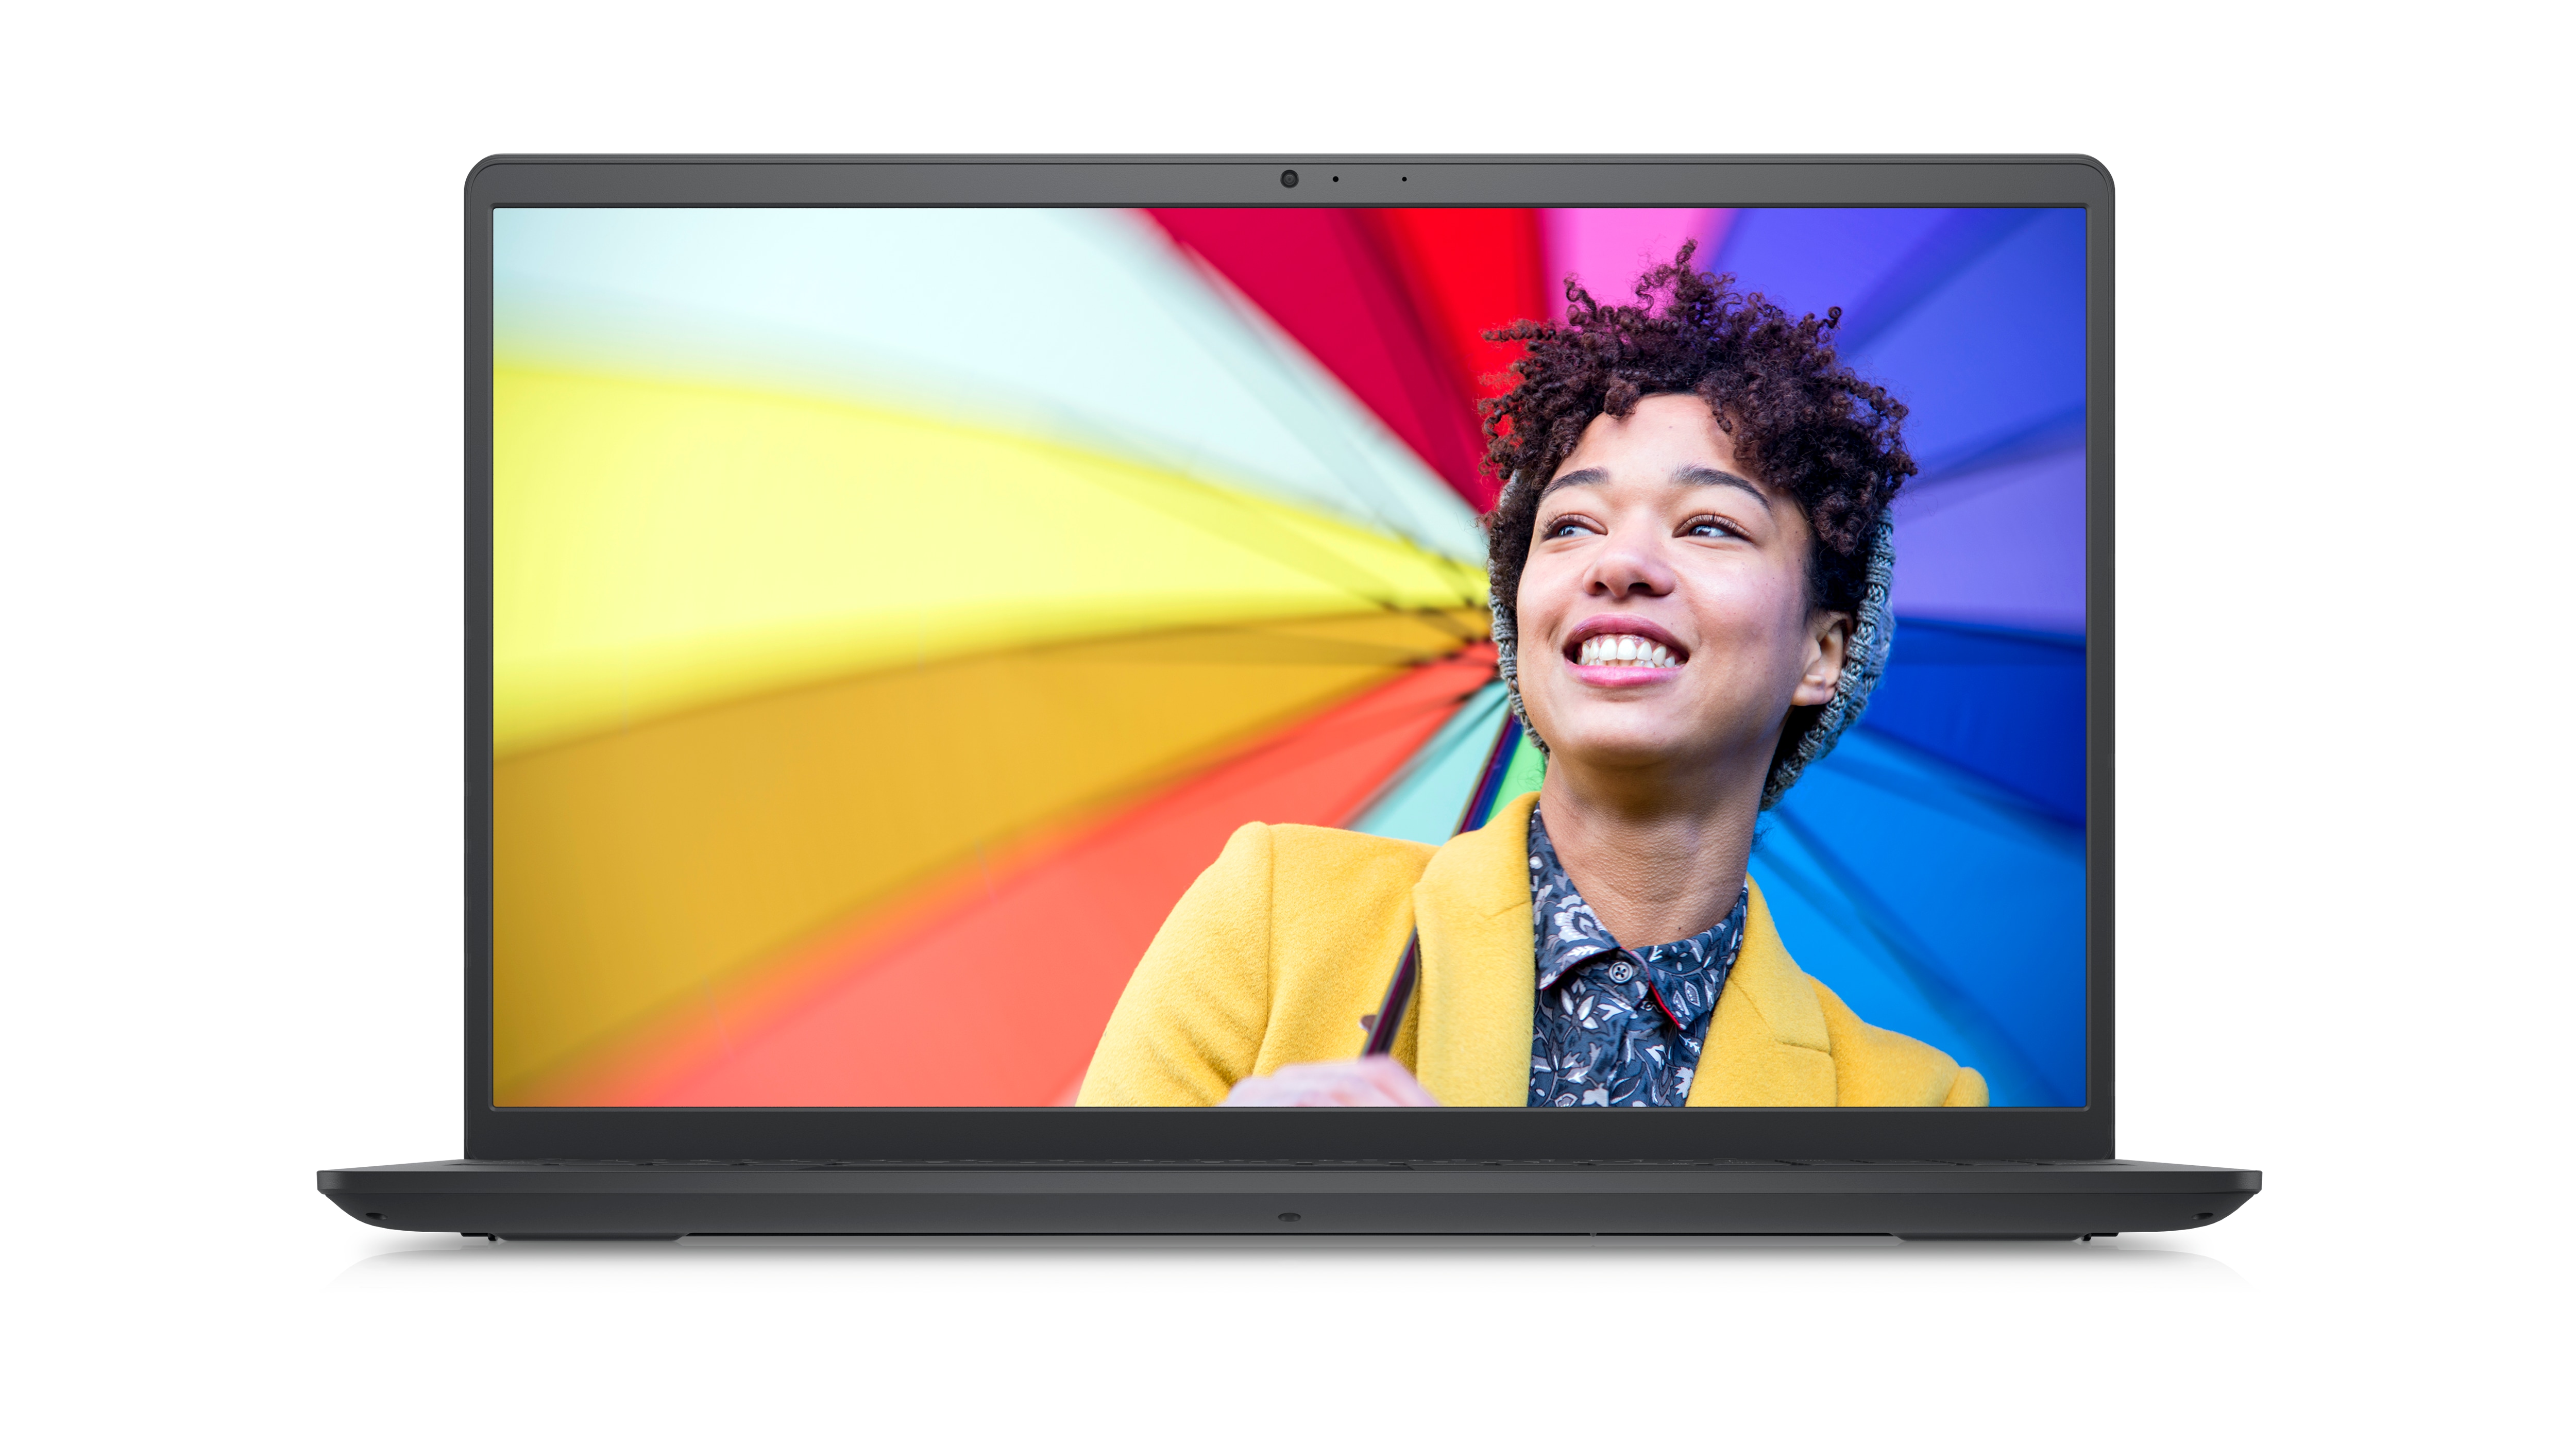 Bild eines Dell Laptops vom Typ Inspiron 15 3525 mit einem lächelnden Mädchen in einem gelben Blazer vor einem farbigen Hintergrund auf dem Bildschirm.